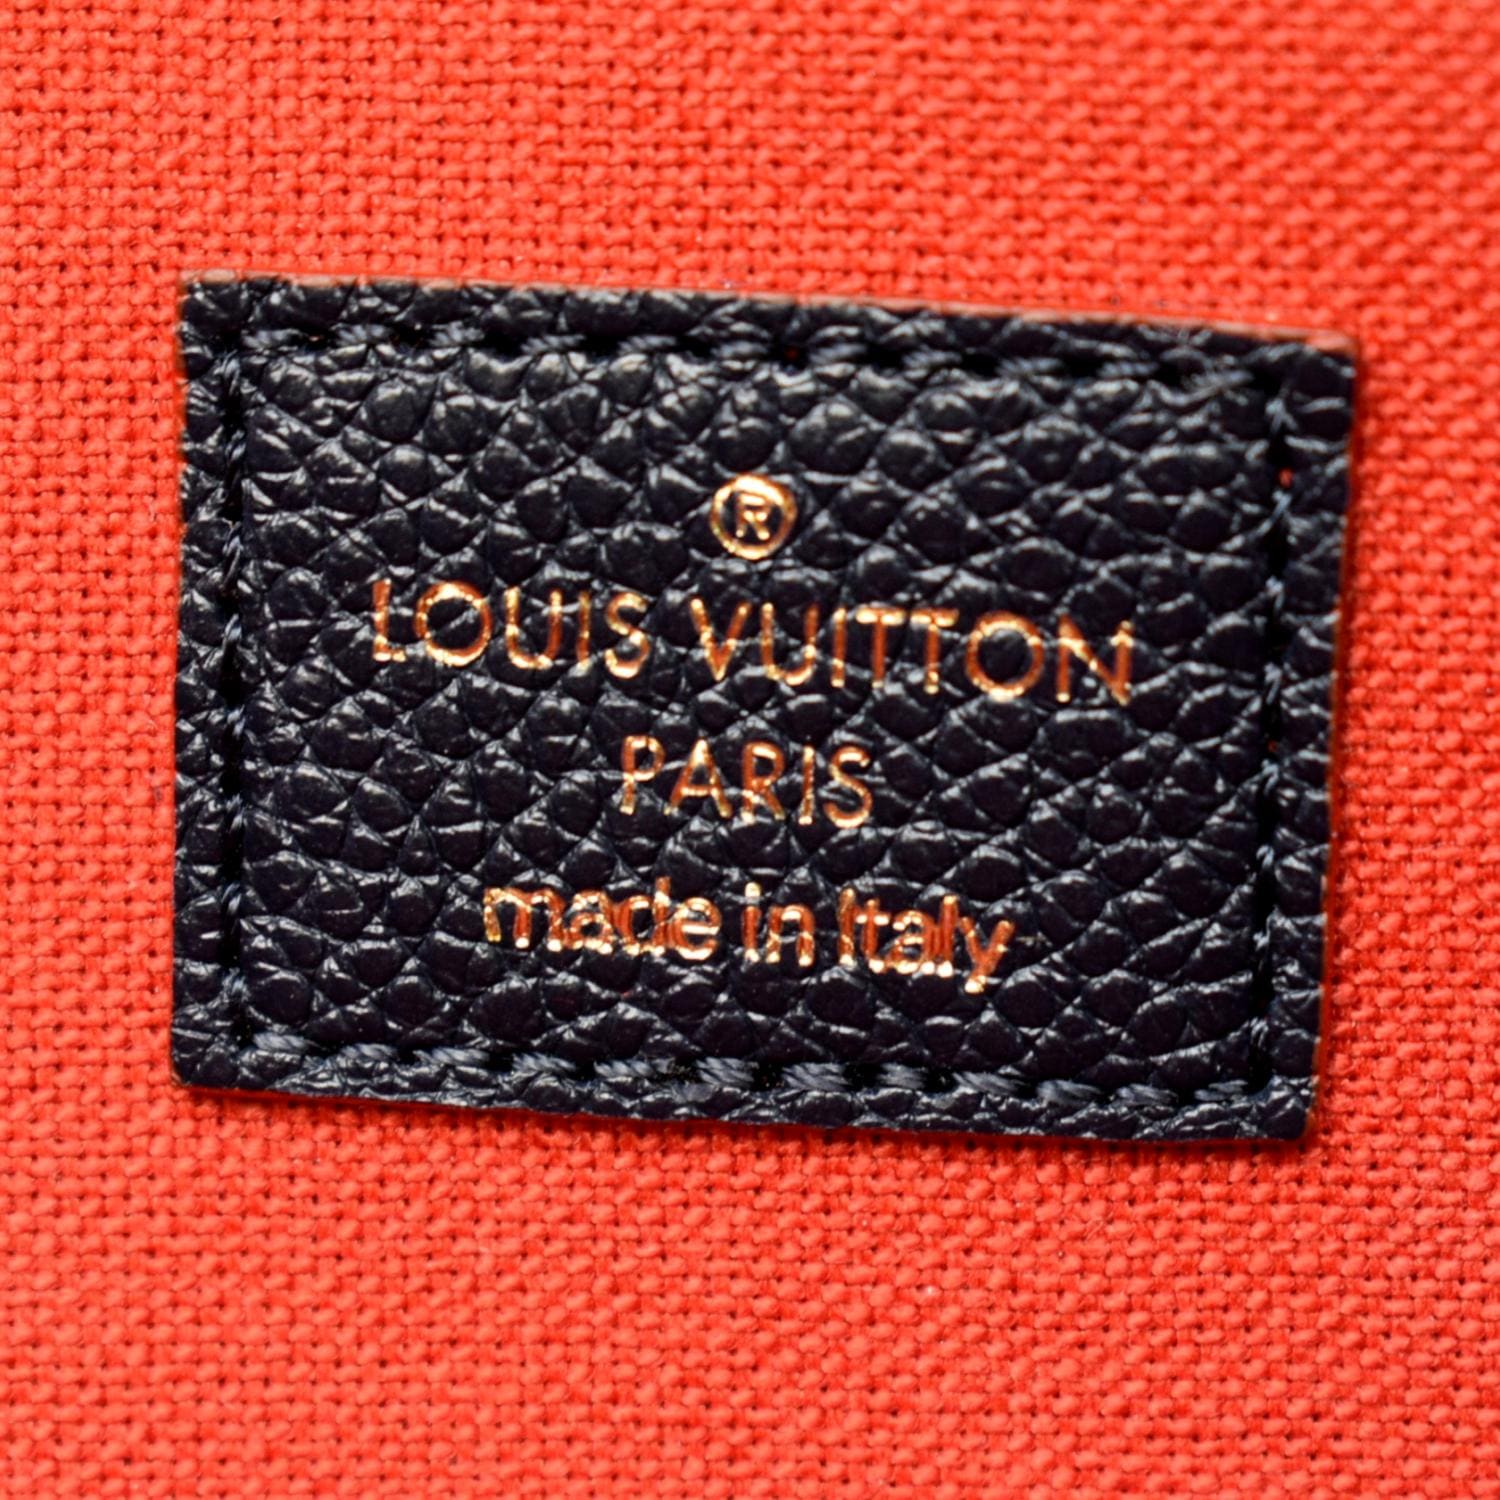 Louis Vuitton Pochette Felicie Monogram Empreinte Marine Rouge